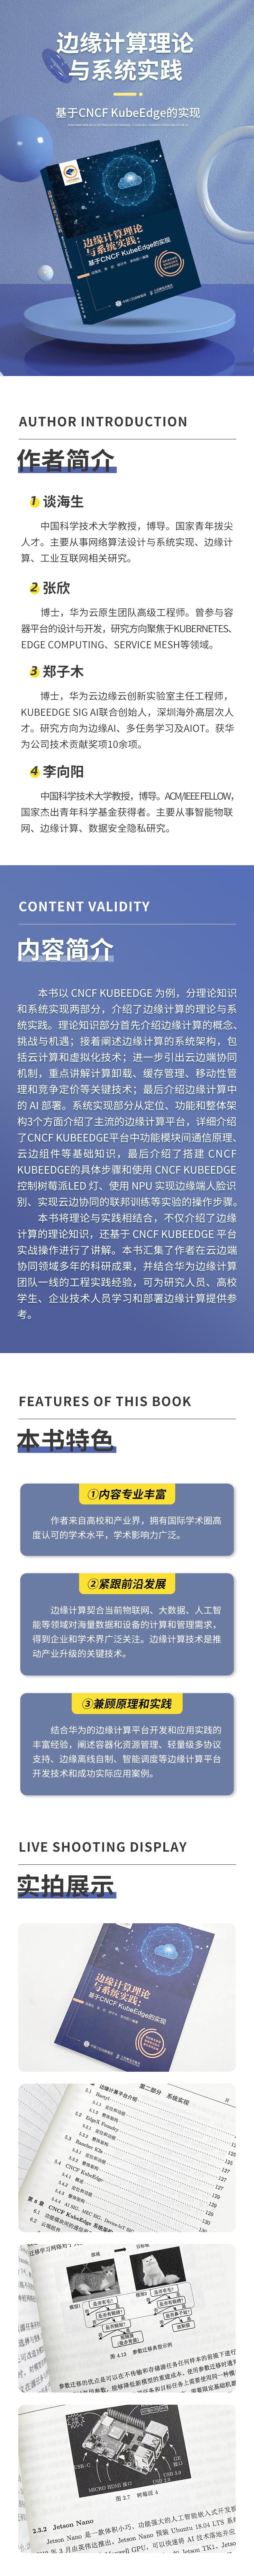 边缘计算理论与系统实践:基于CNCF KubeEdge的实现 软硬件技术